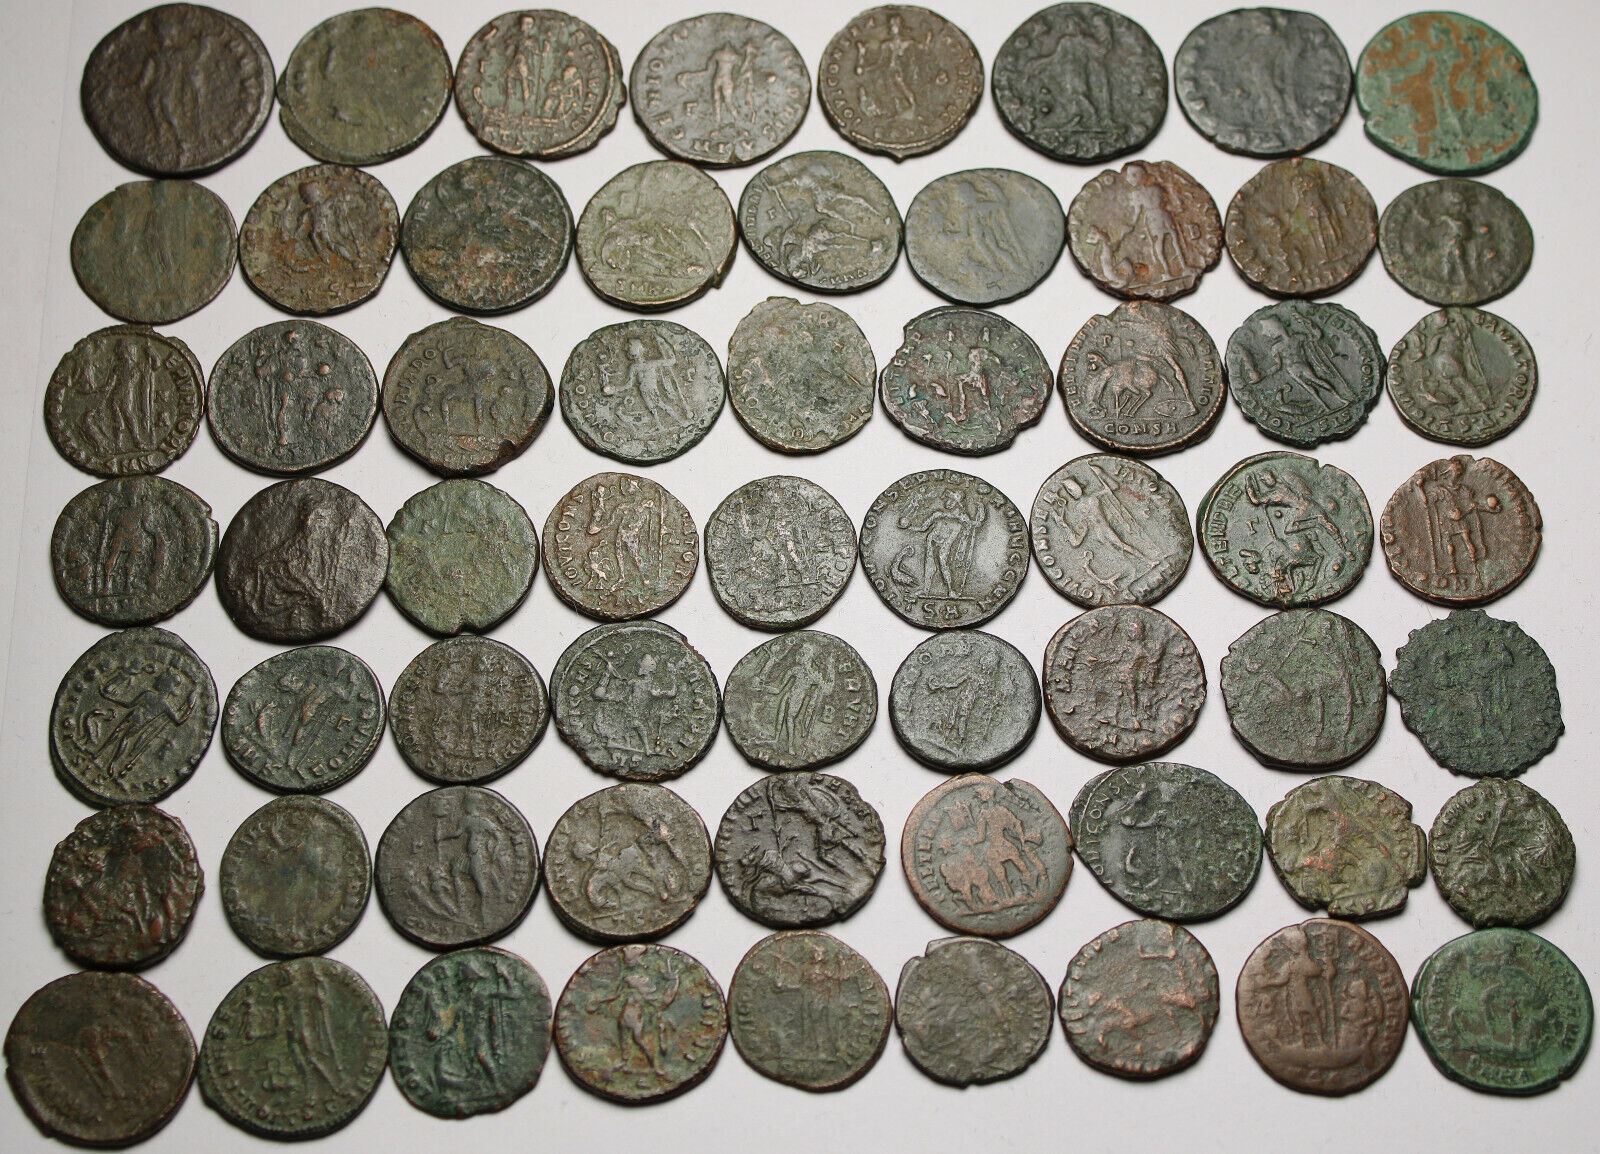 Lot of 3 large coins Rare original Ancient Roman Constantius Licinius Maximianus Без бренда - фотография #5